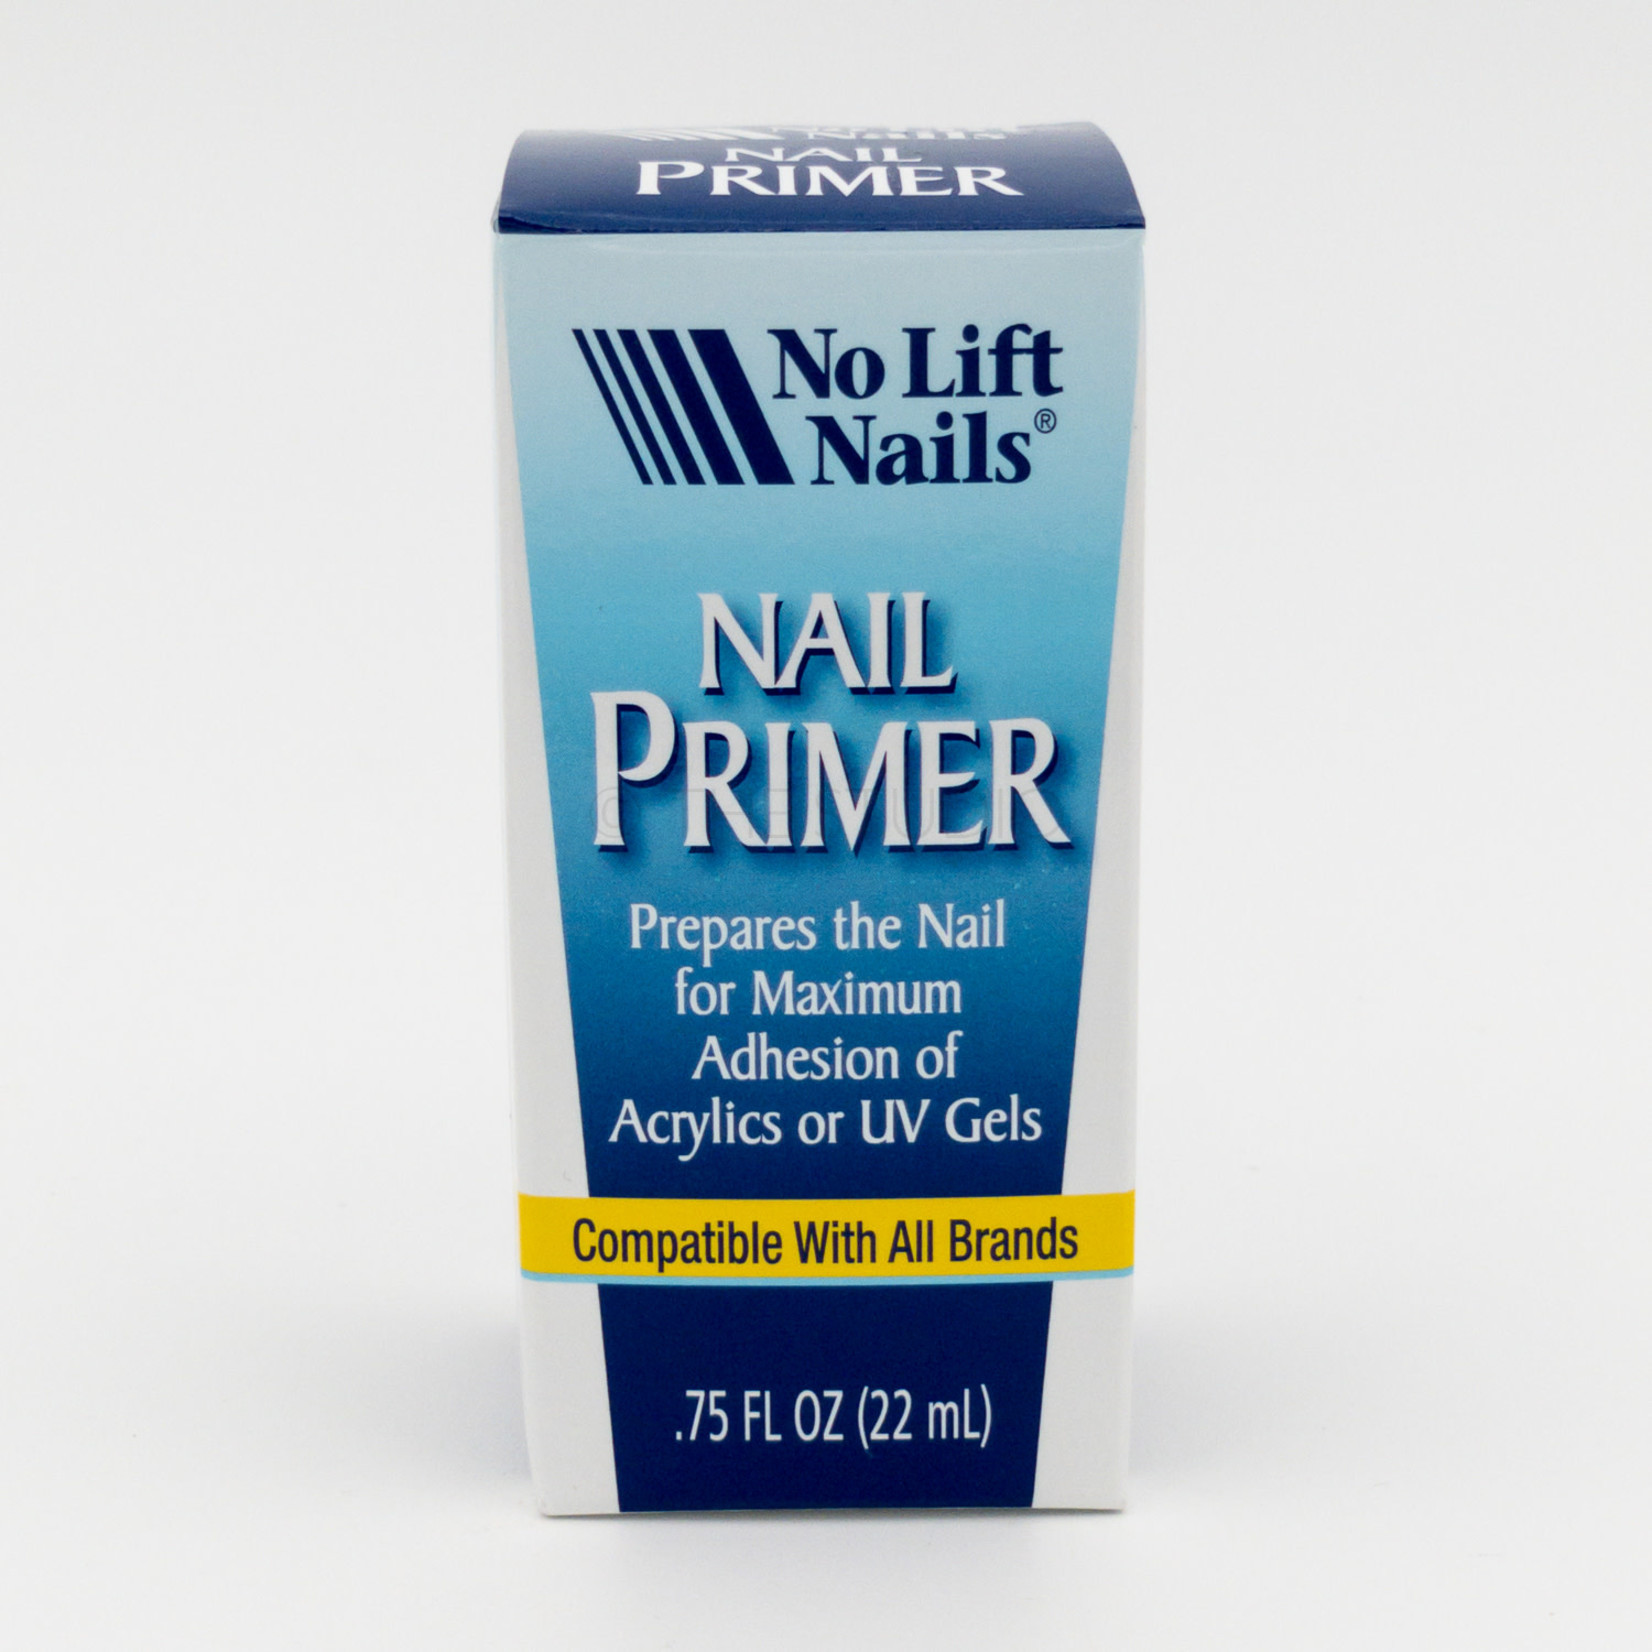 No Lift Nails - Nail Primer